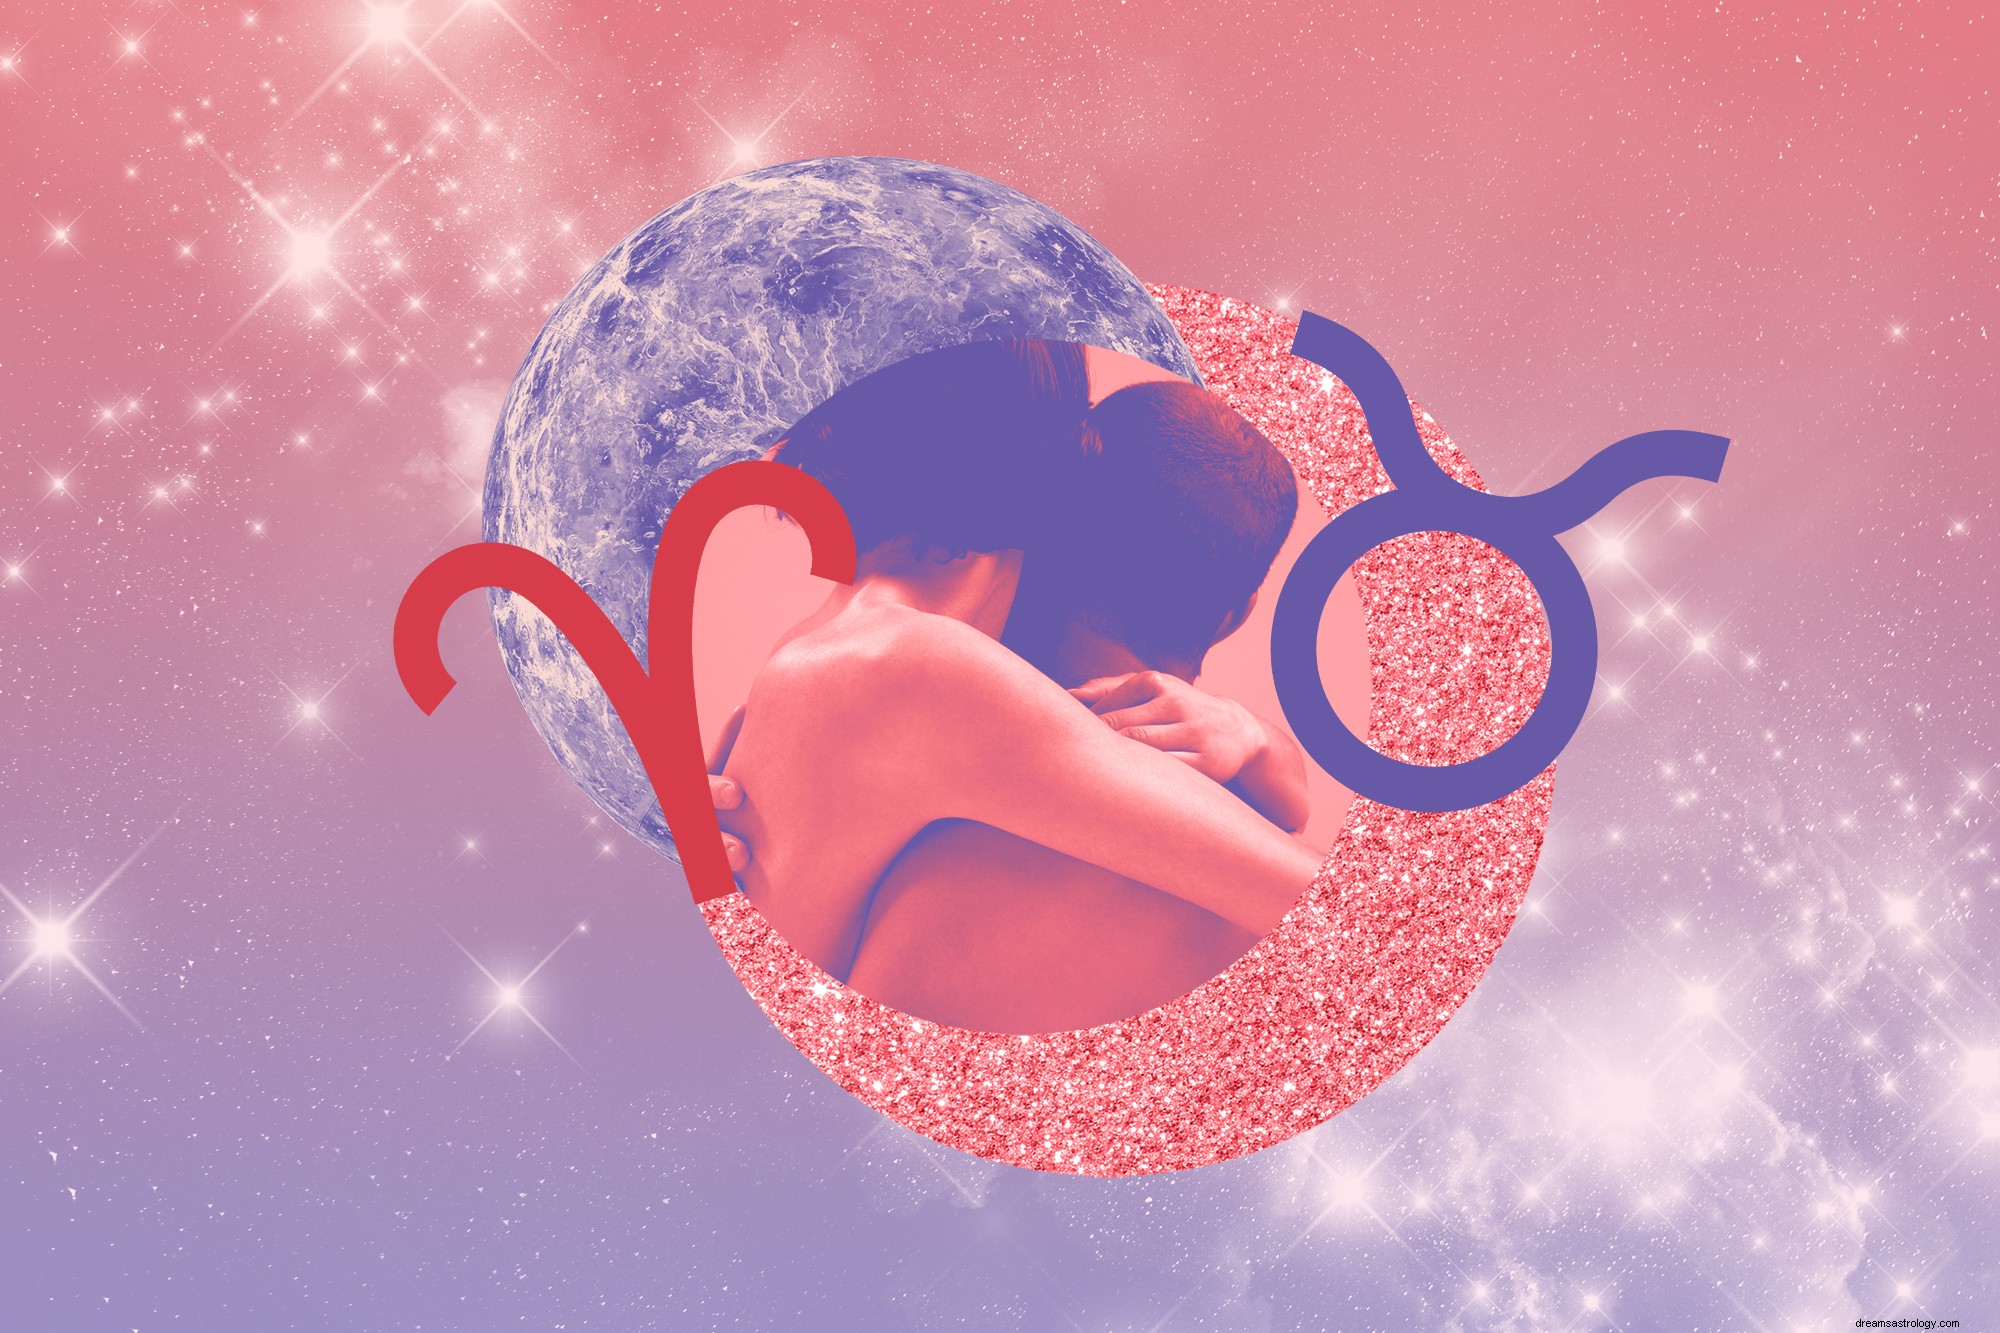 Horoskop Seks dan Cinta Anda untuk April 2021 